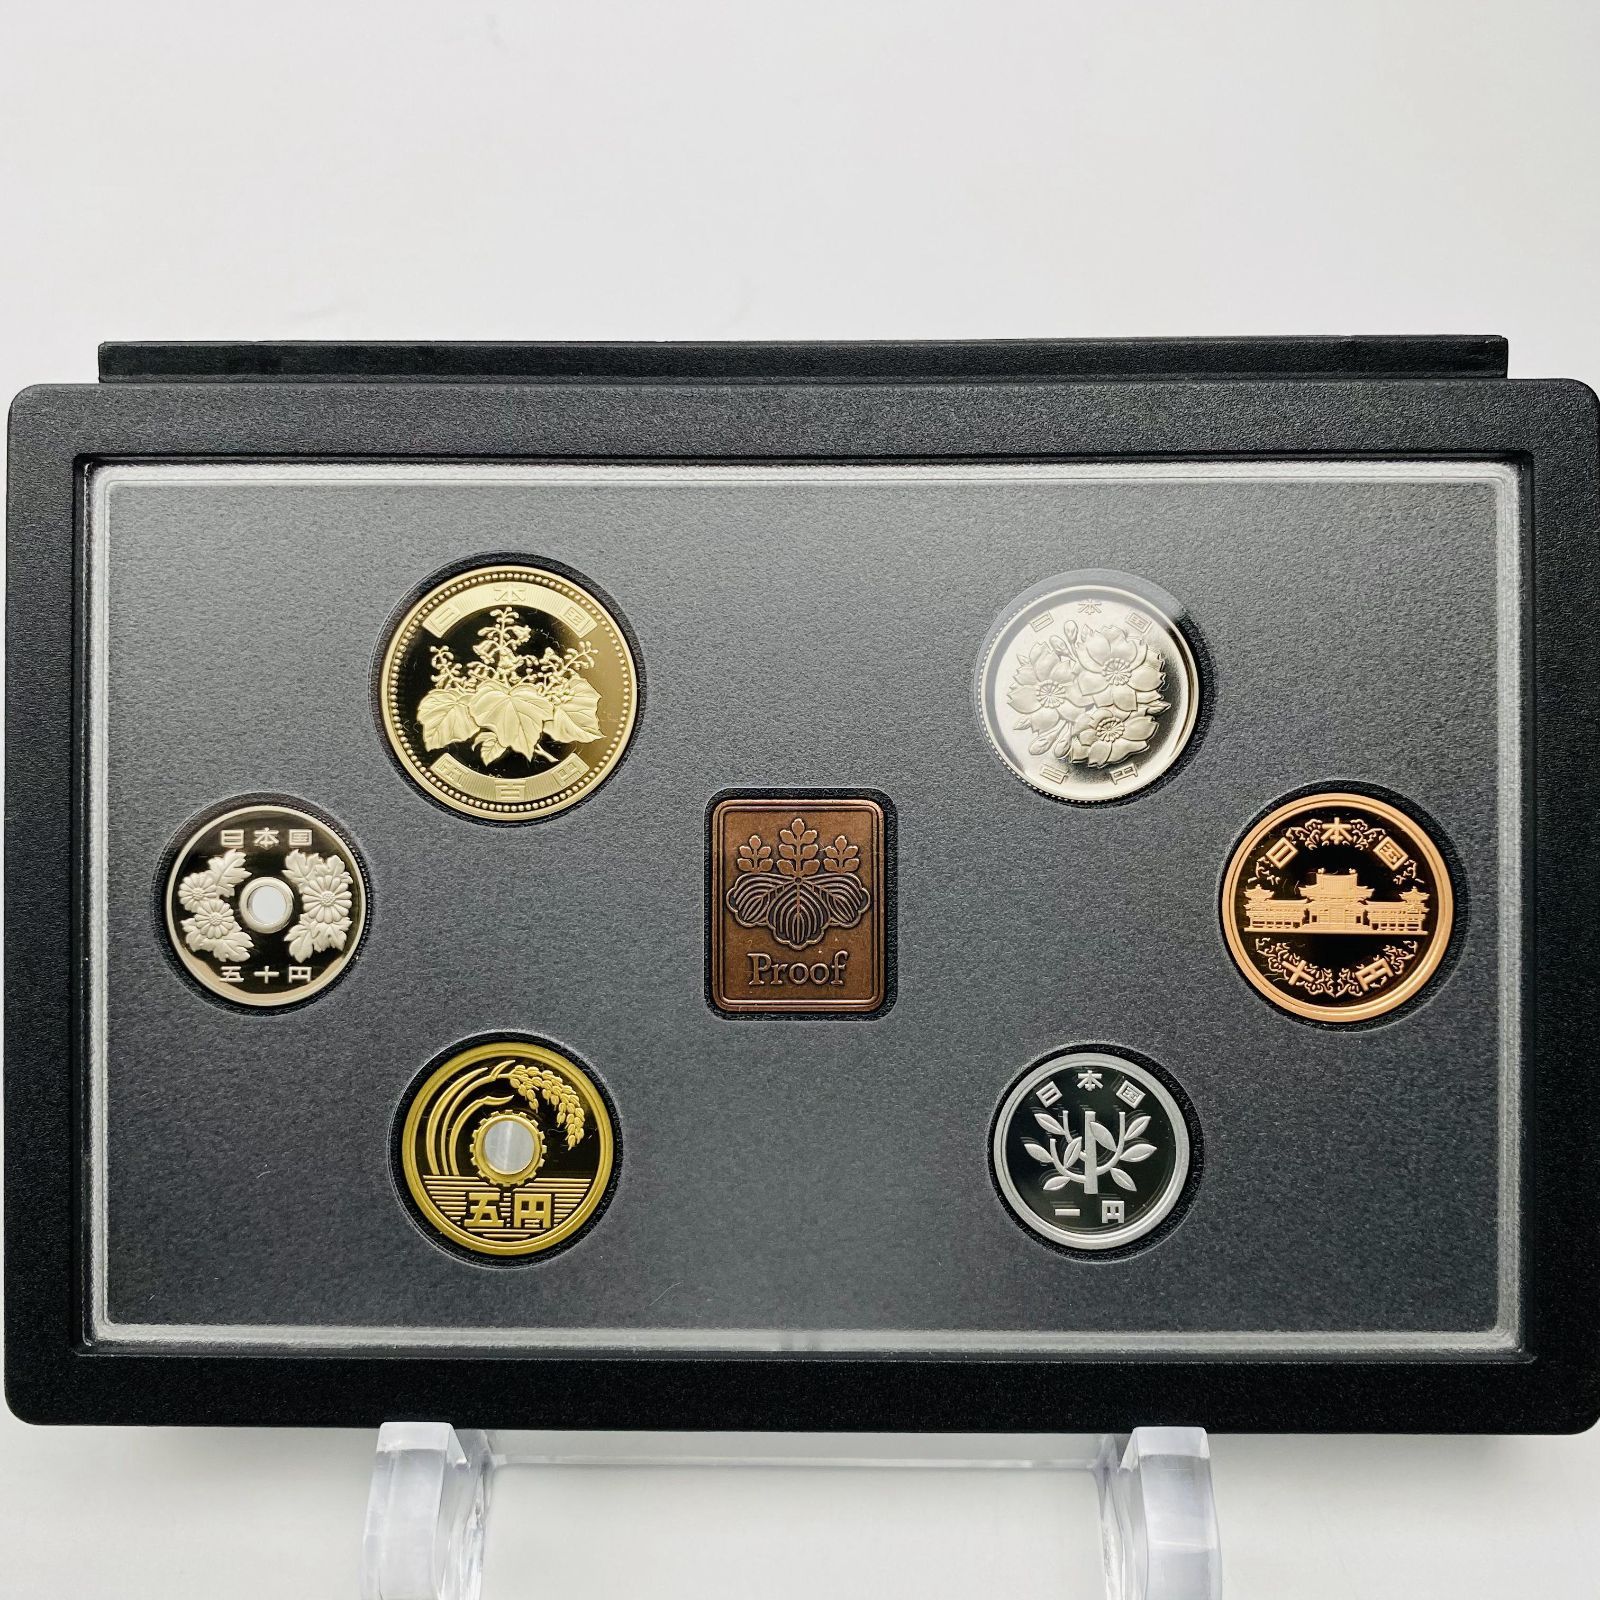 プルーフ貨幣セット 2019 額面666円 年銘板 記念硬貨 限定貨幣 coin 